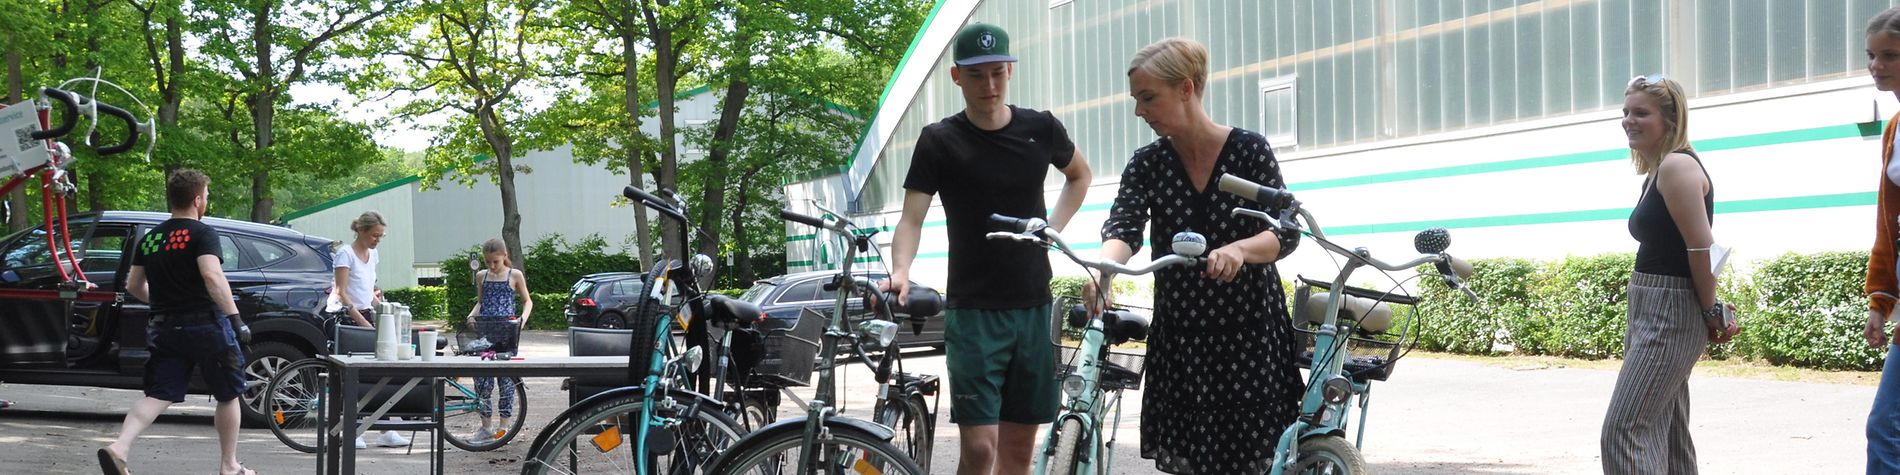 Eine Frau und ein Mann begutachten Fahrräder bei der mobilen Fahrradwerkstatt vor dem Gebäude des Sportvereins THK Rissen